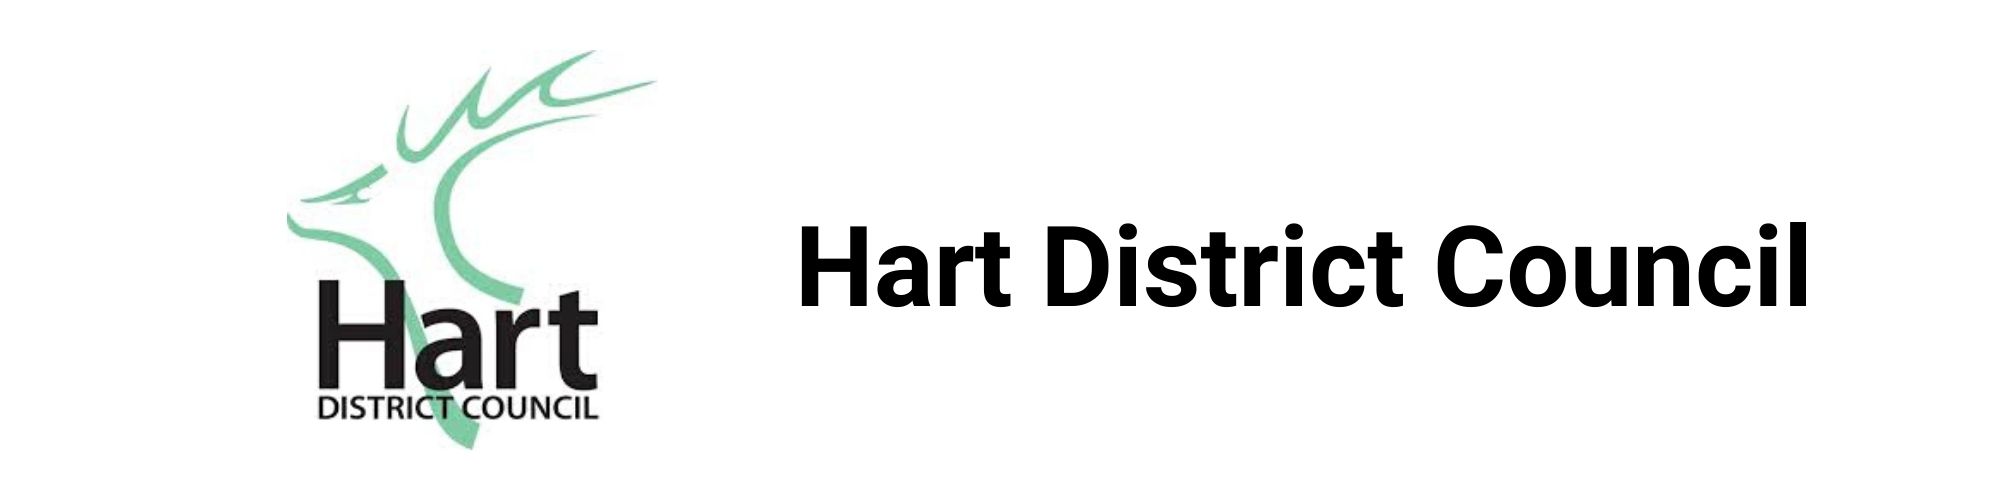 Hart District Coucnil